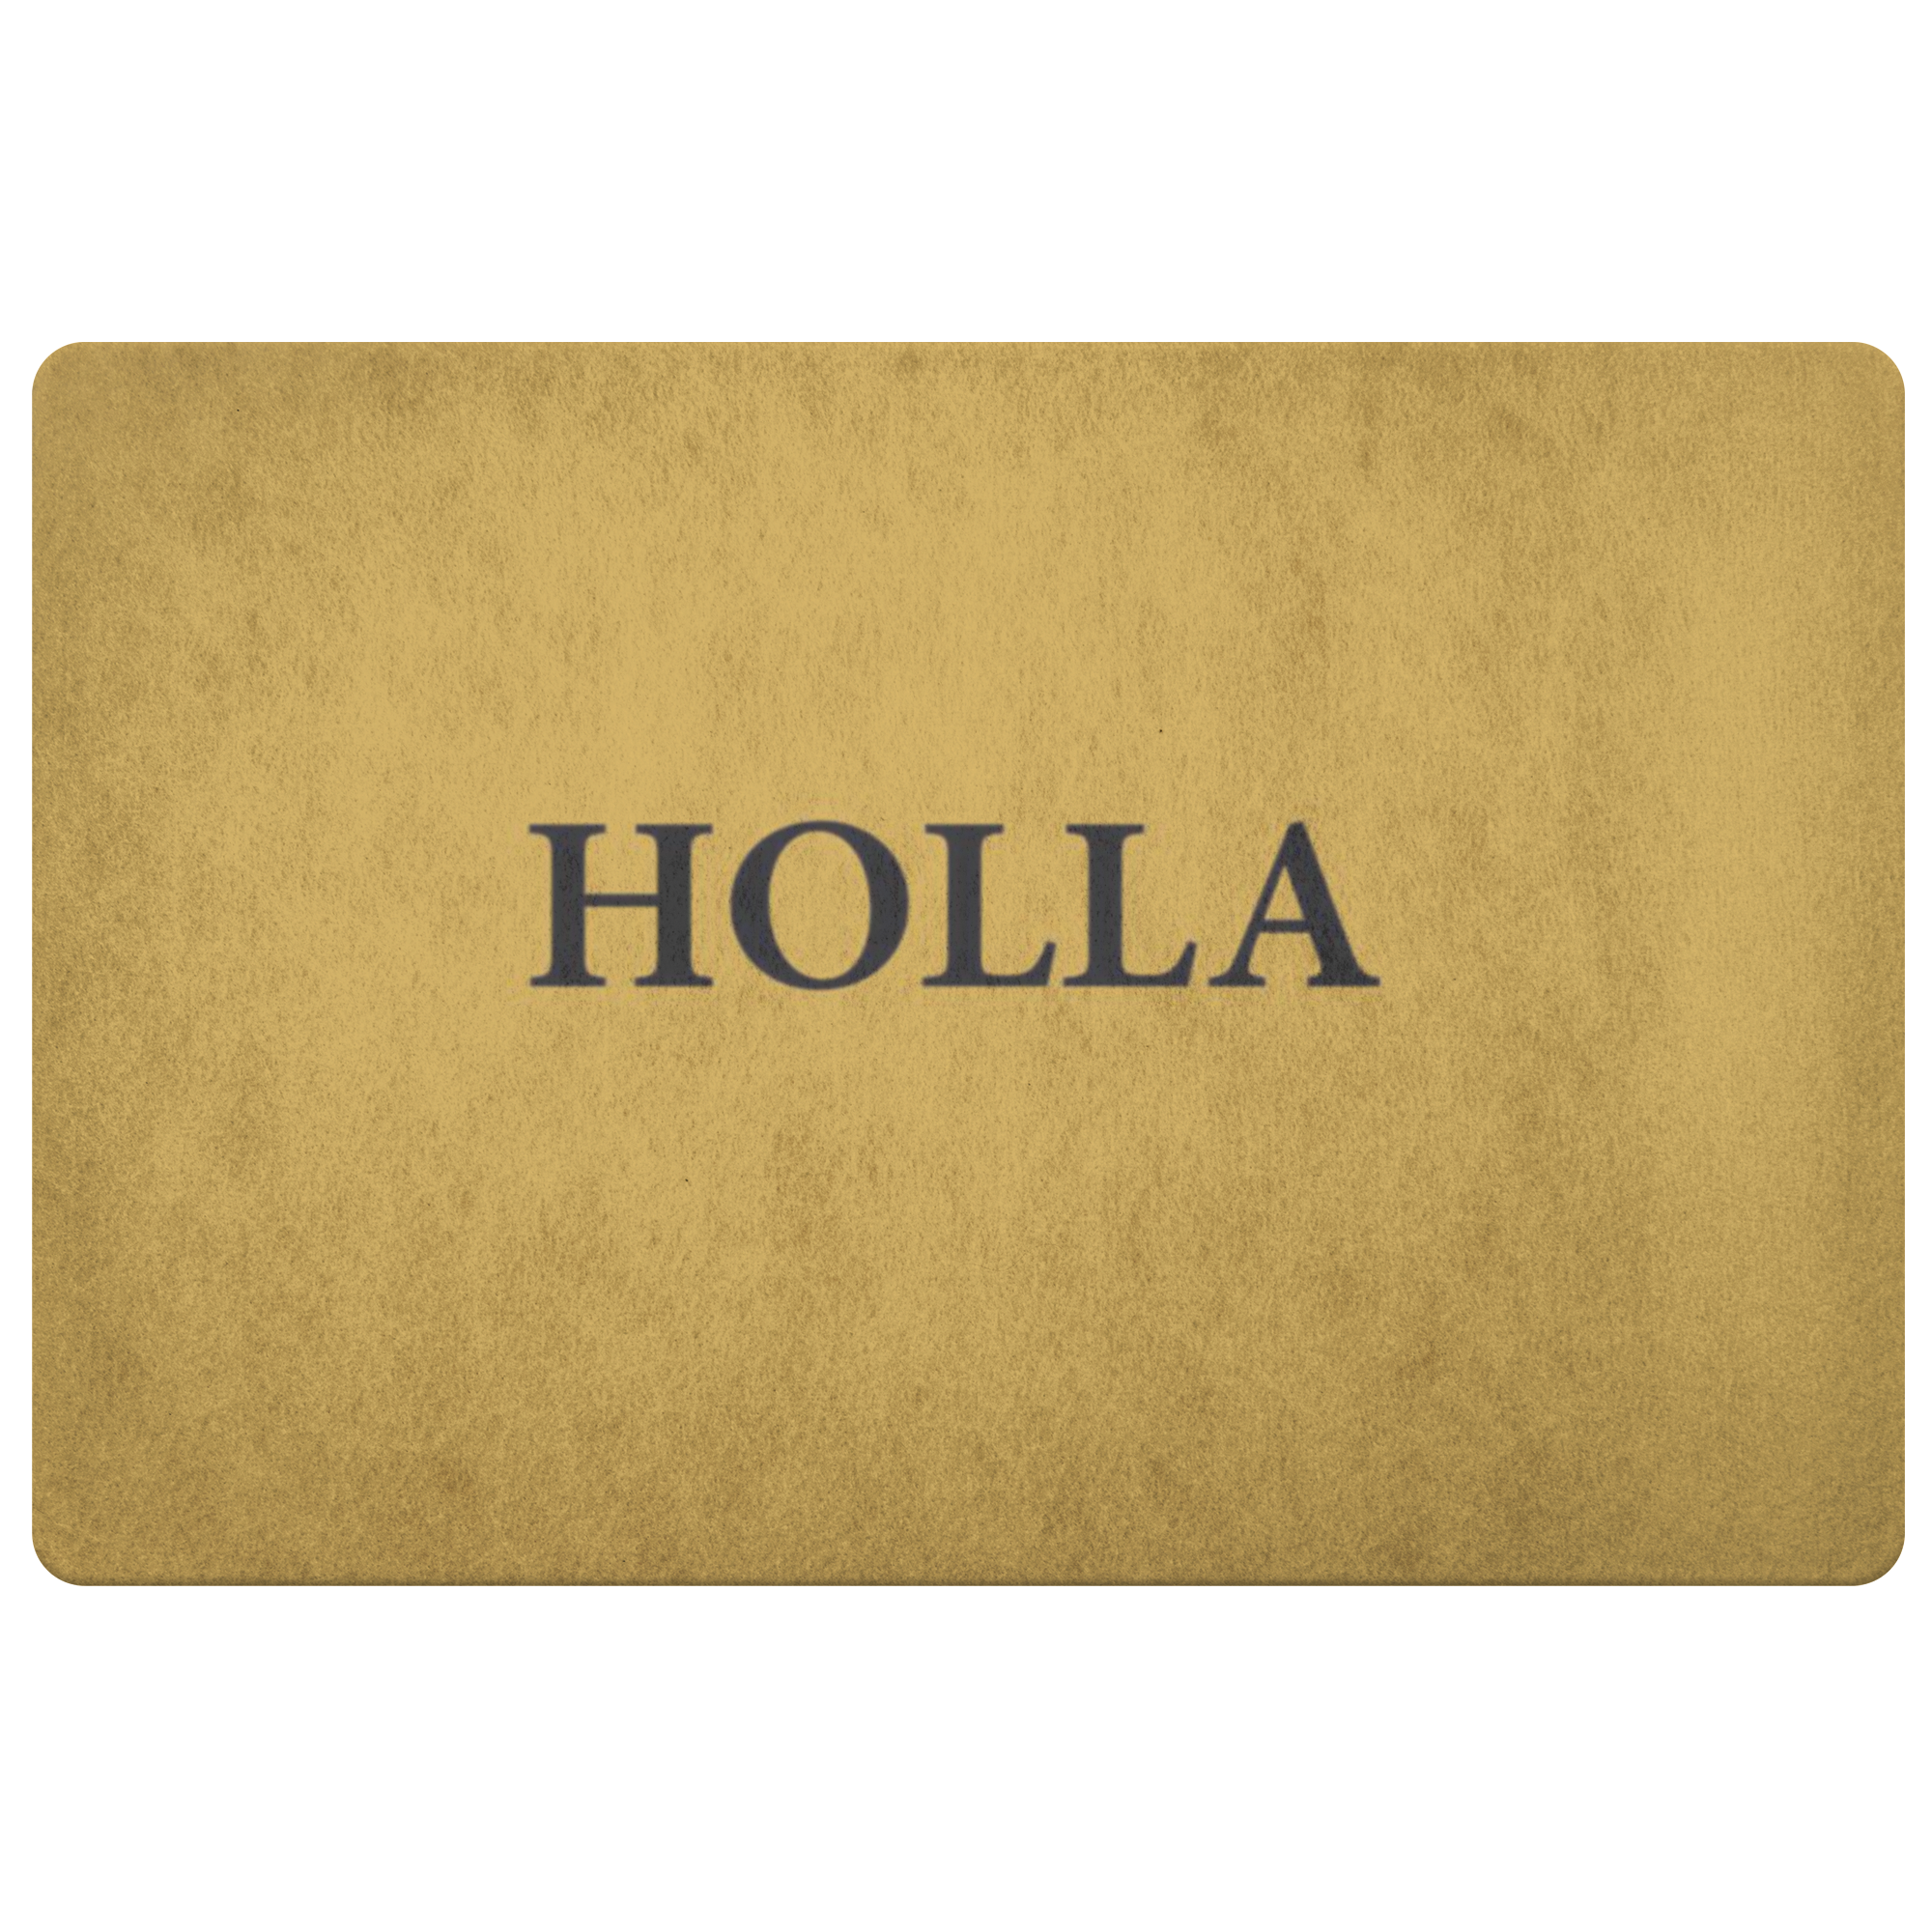 Holla Doormat (Hand Stenciled)